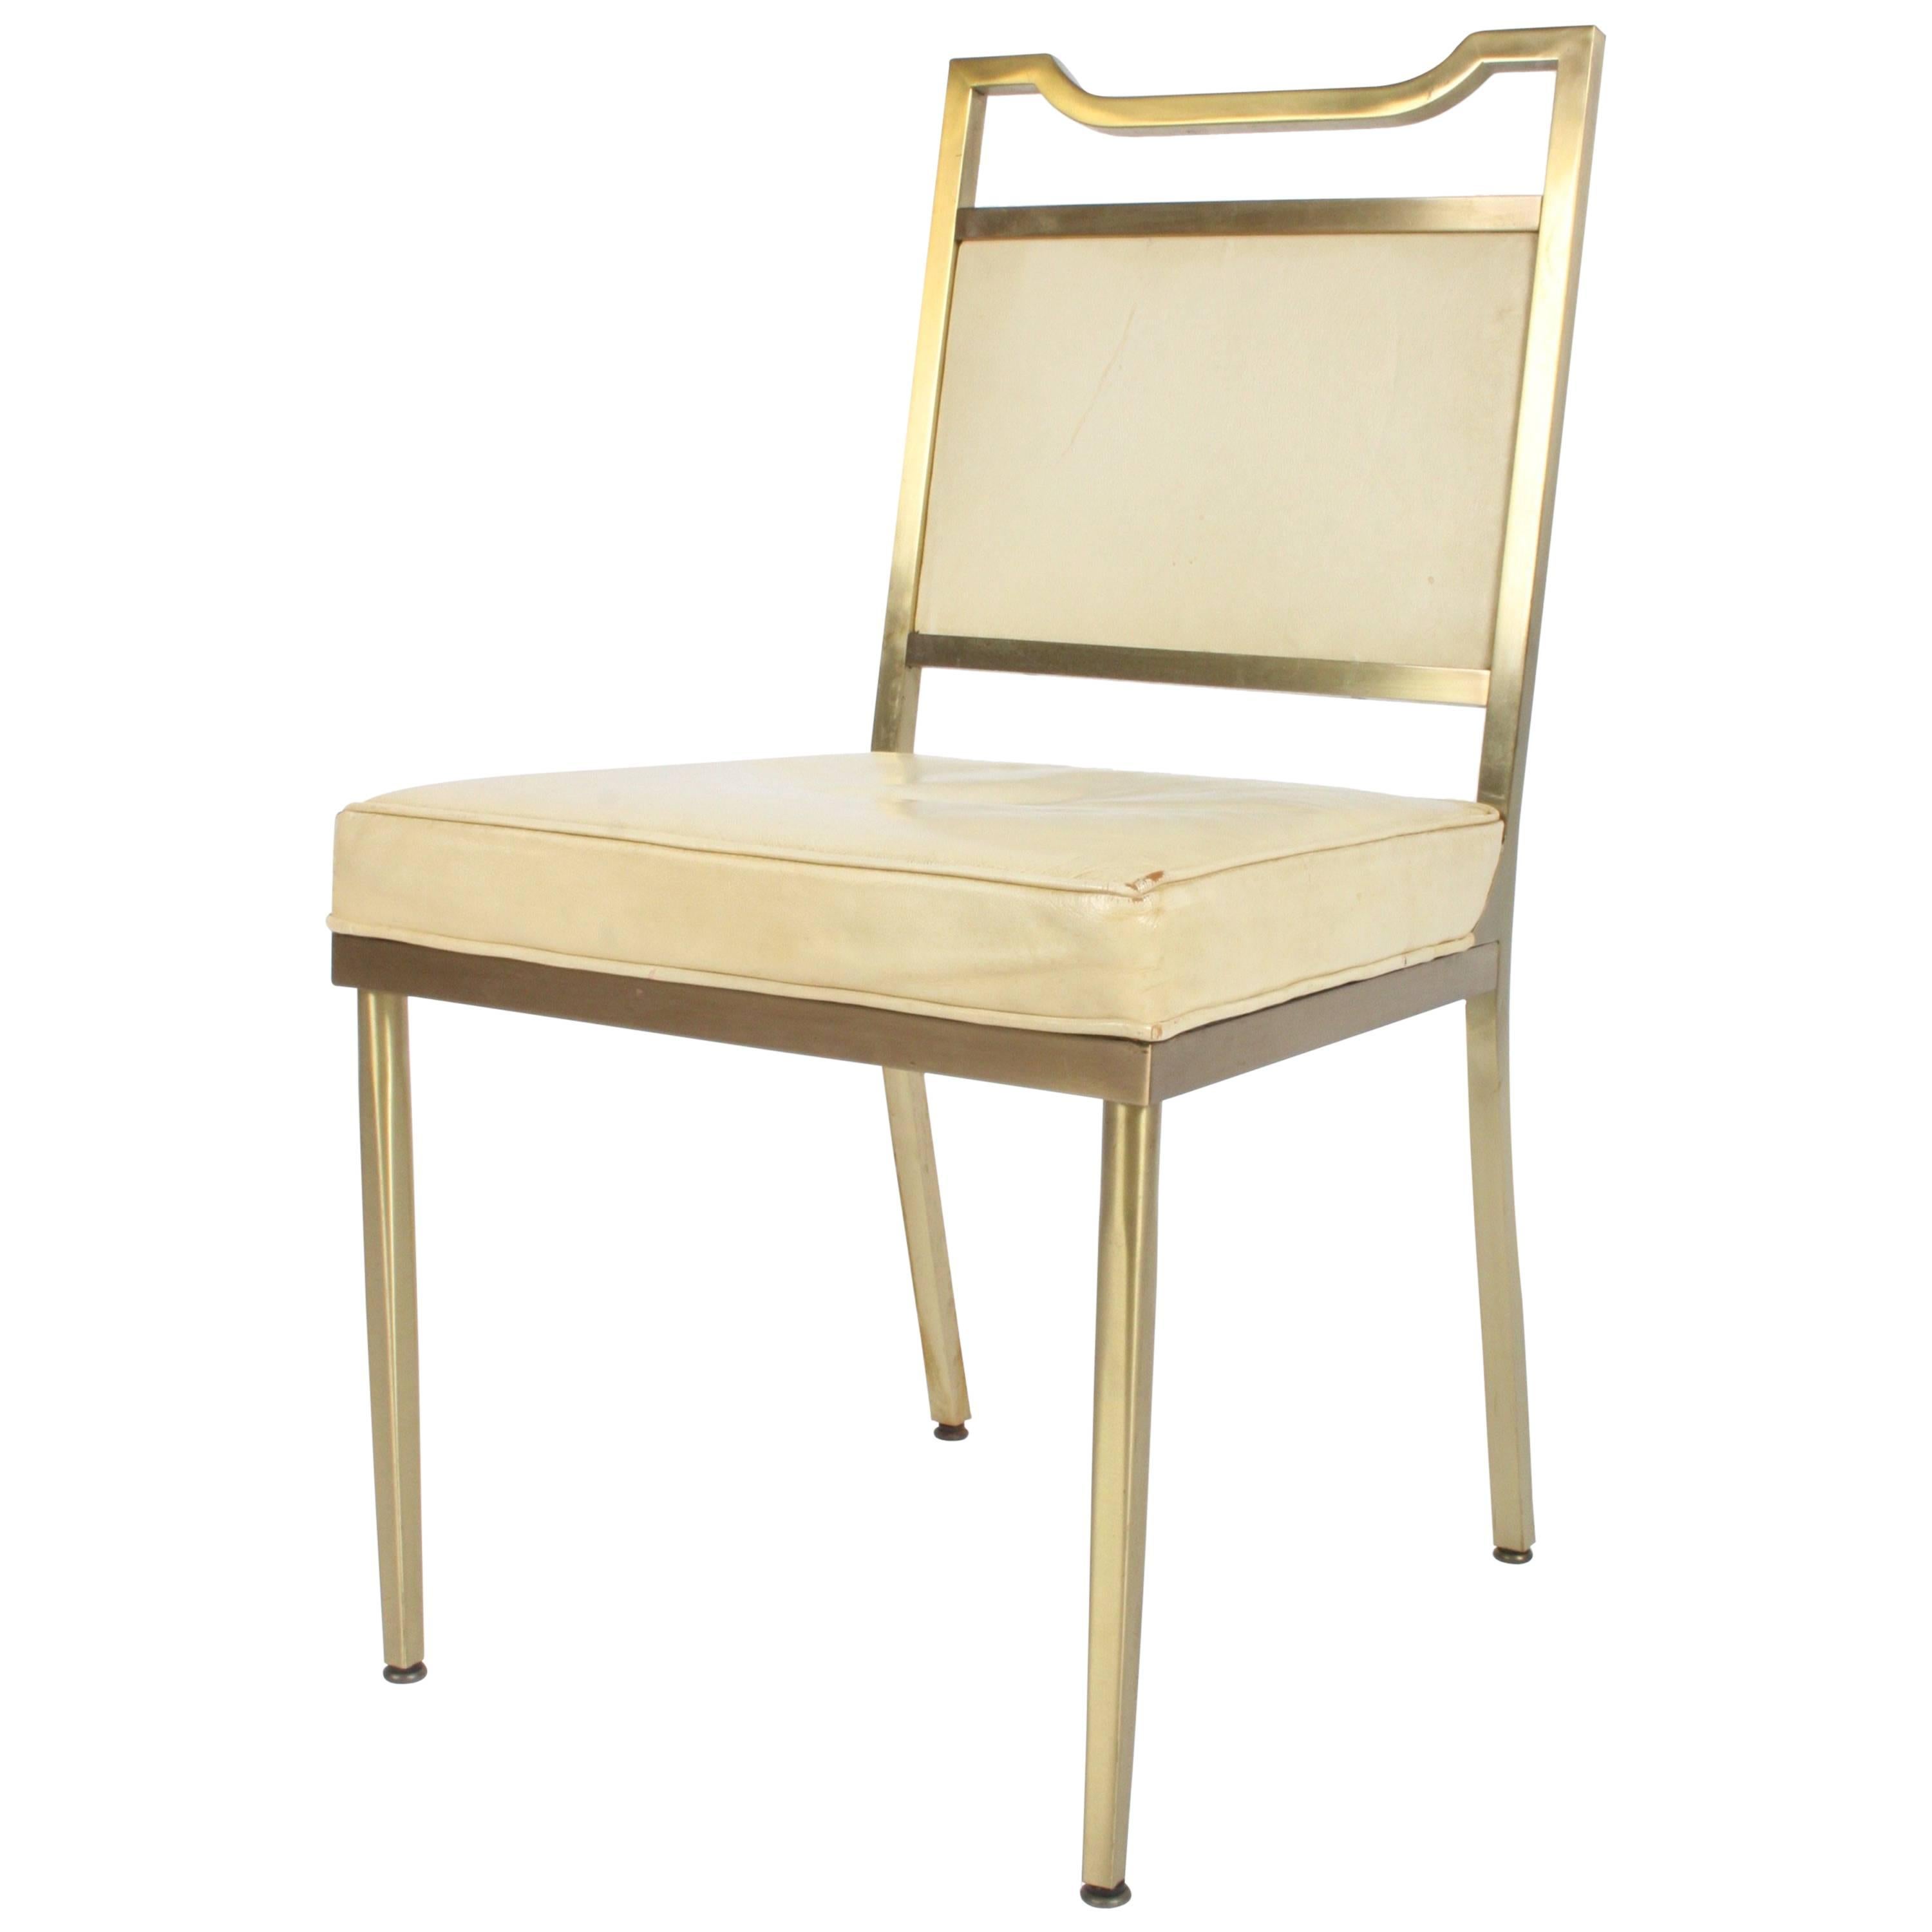 Billy Haines Style Mid-Century Modern Brass Desk Chair